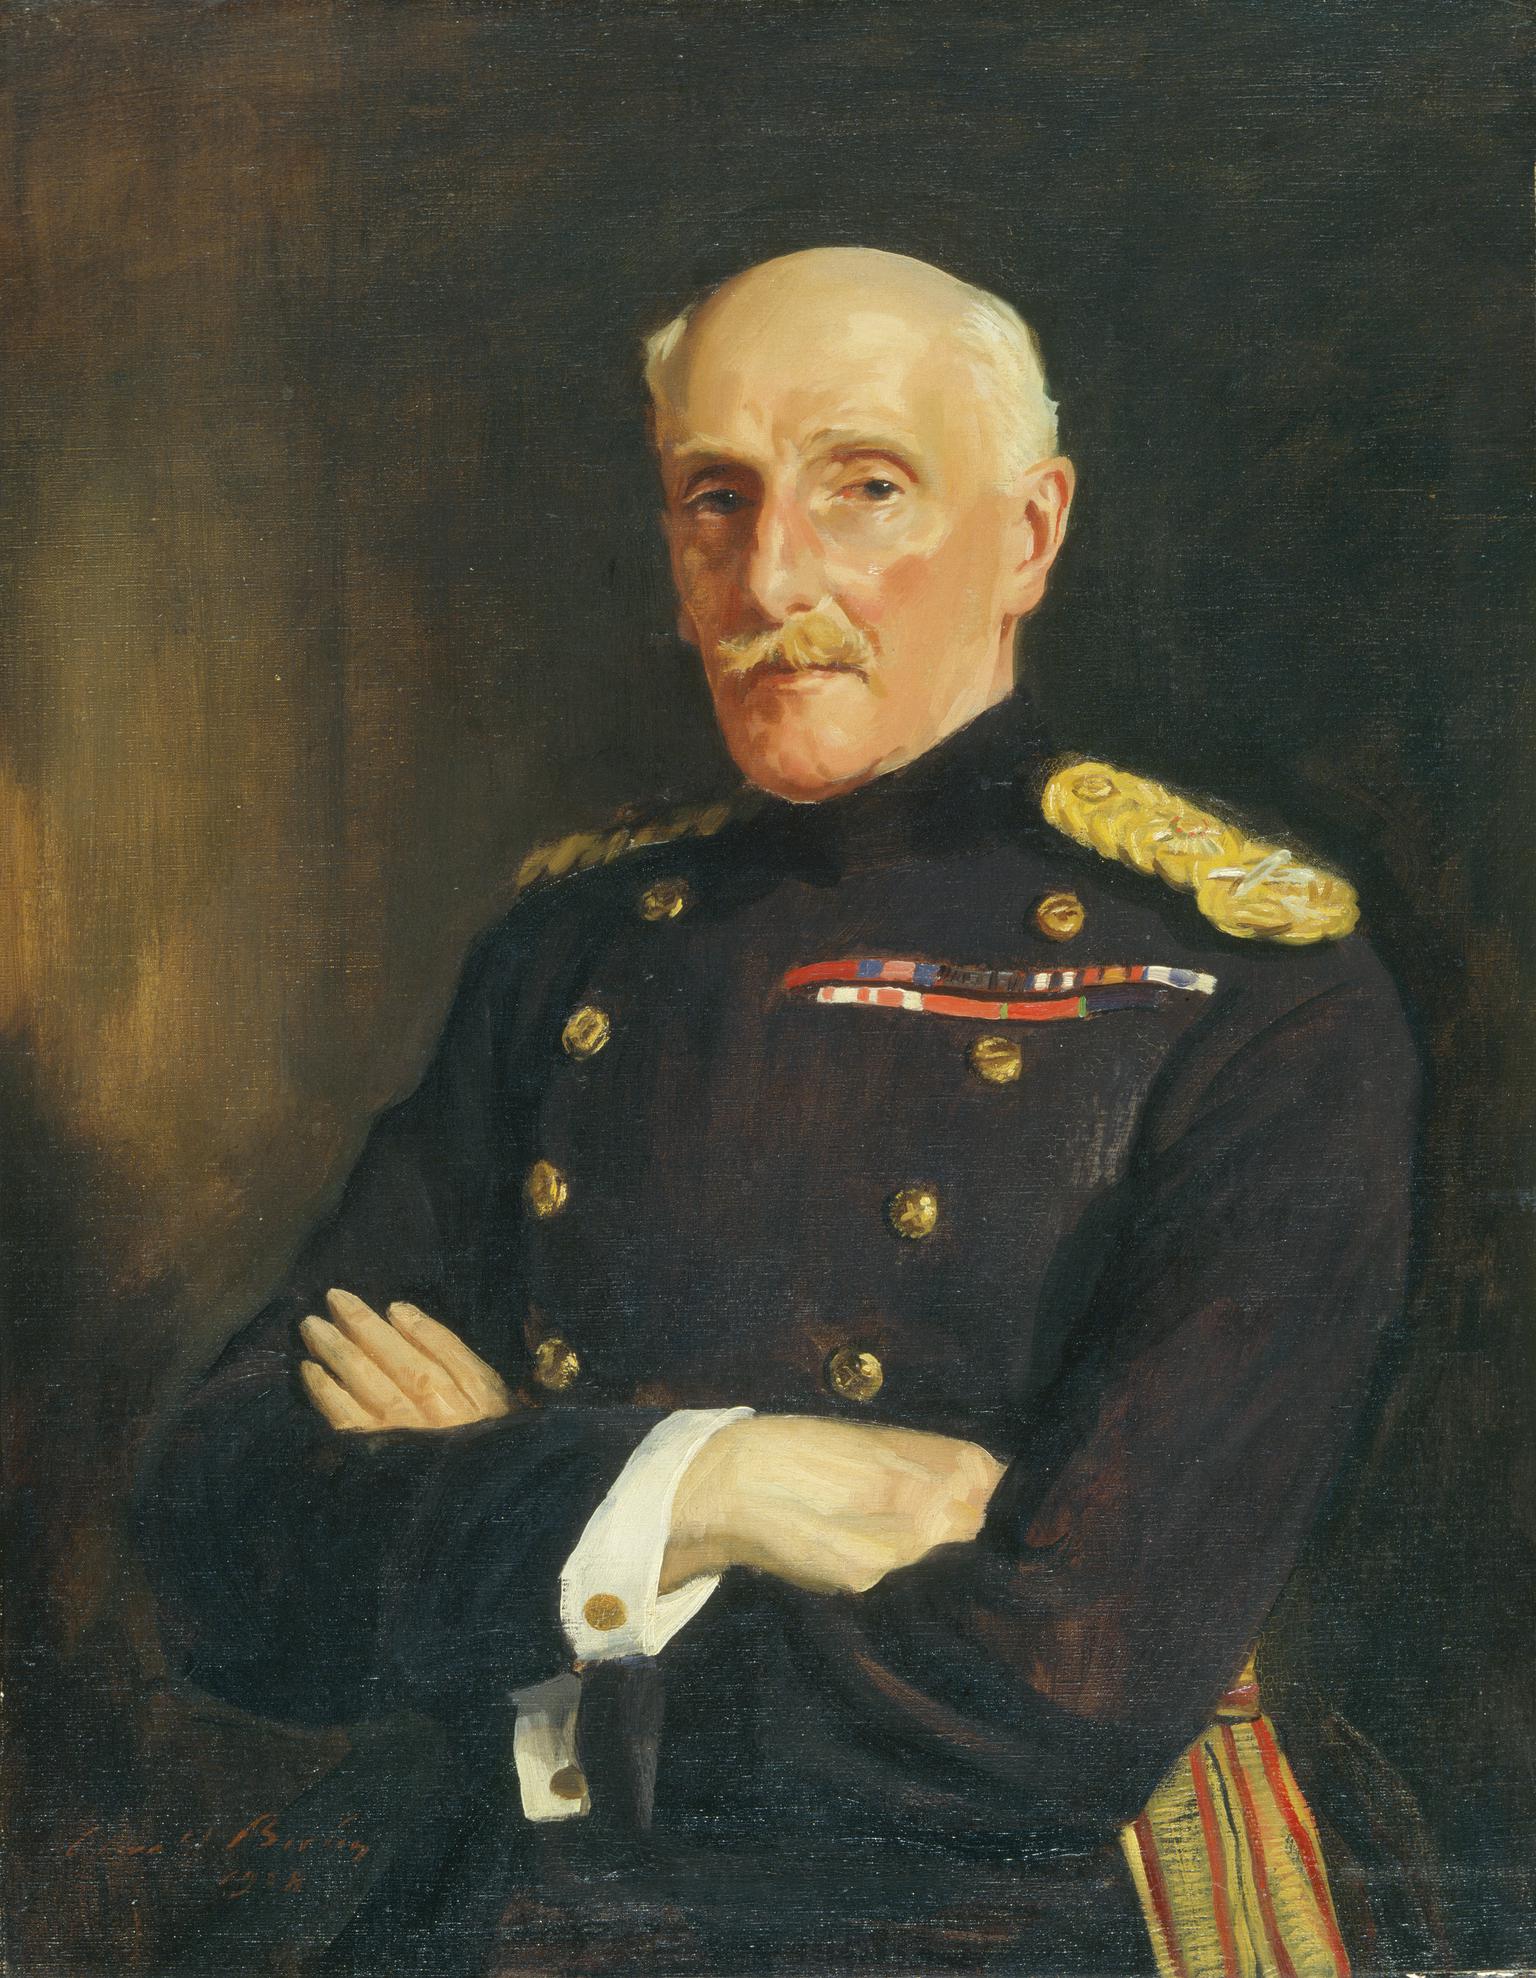 Major-General Ivor Herbert, 1st Baron Treowen (1851-1933)